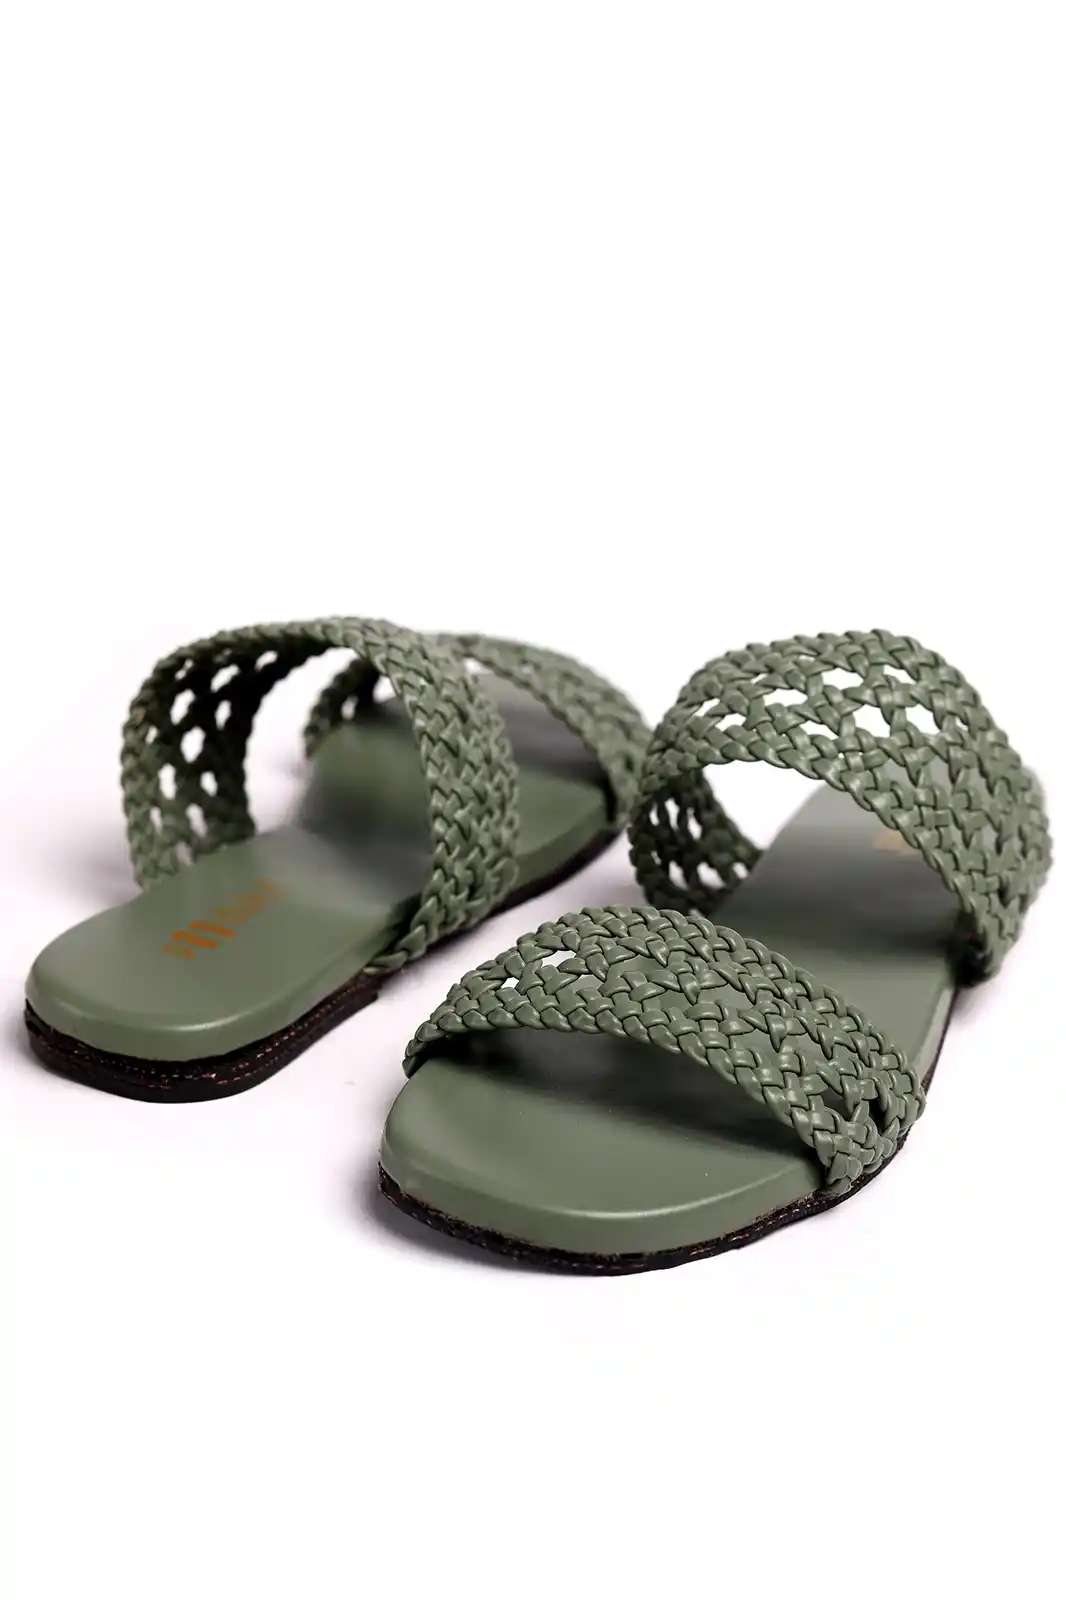 Sandals Marni - Fussbett sandal in green leather - FBM005201P361400V46